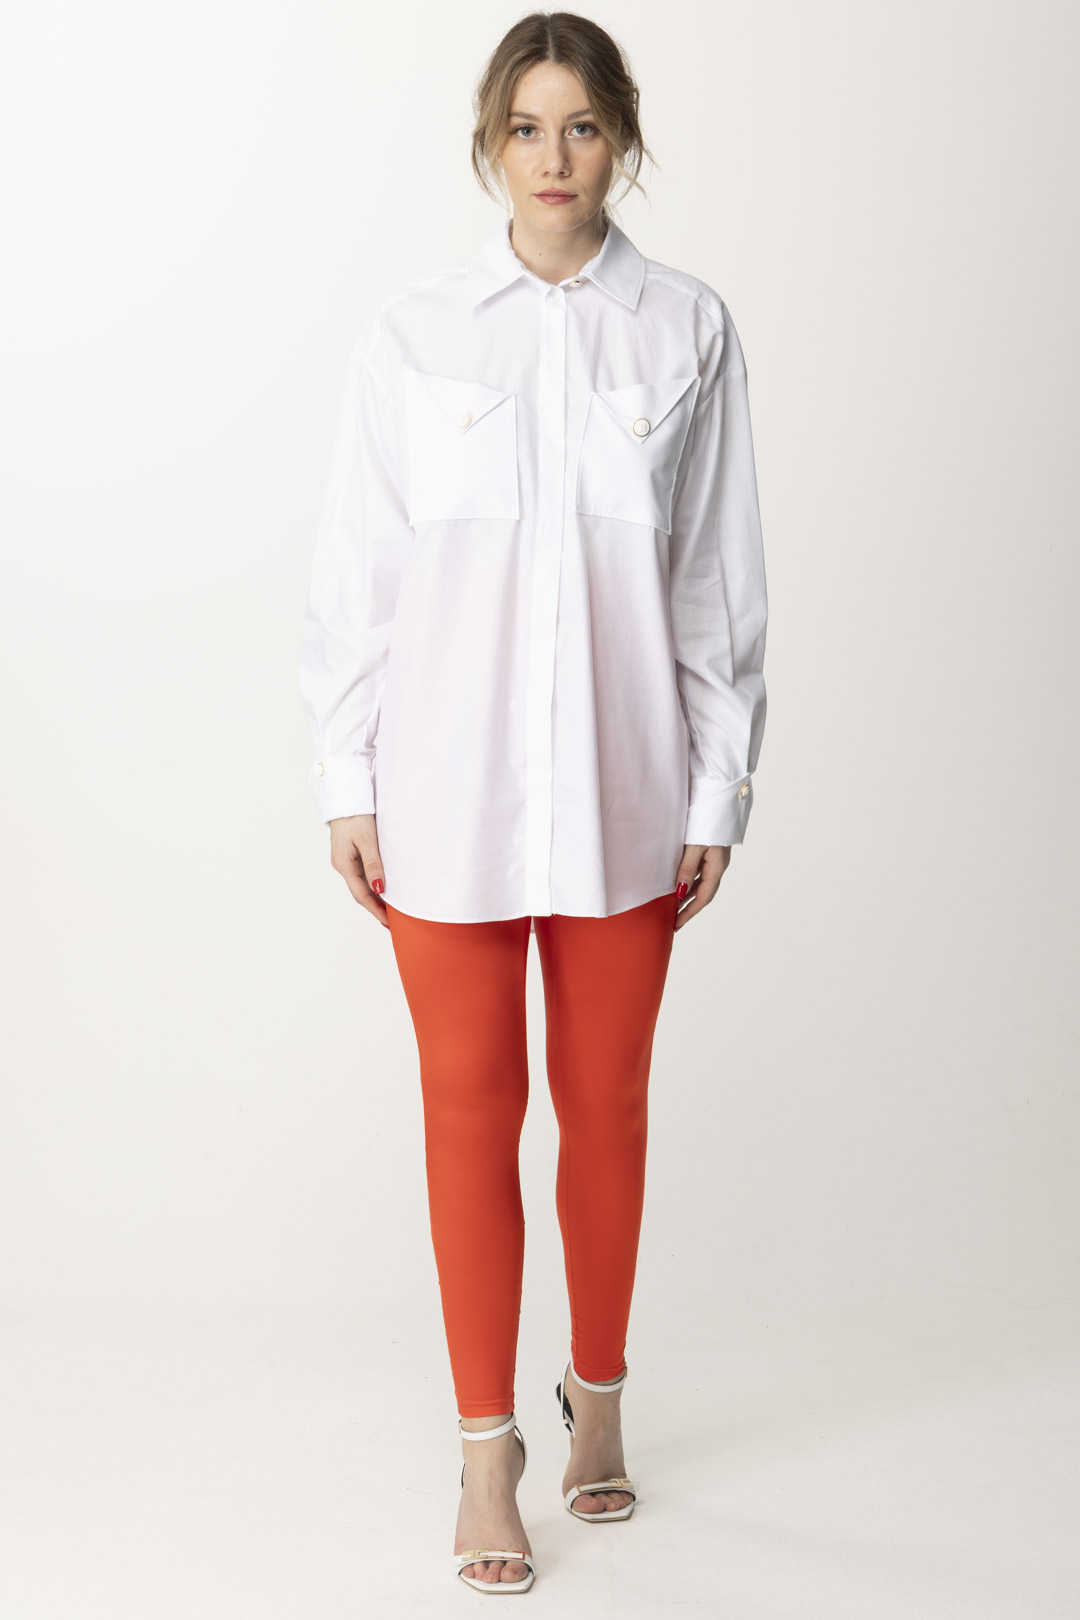 Vorschau: Elisabetta Franchi Hemd mit passenden Taschen und Knöpfen Bianco